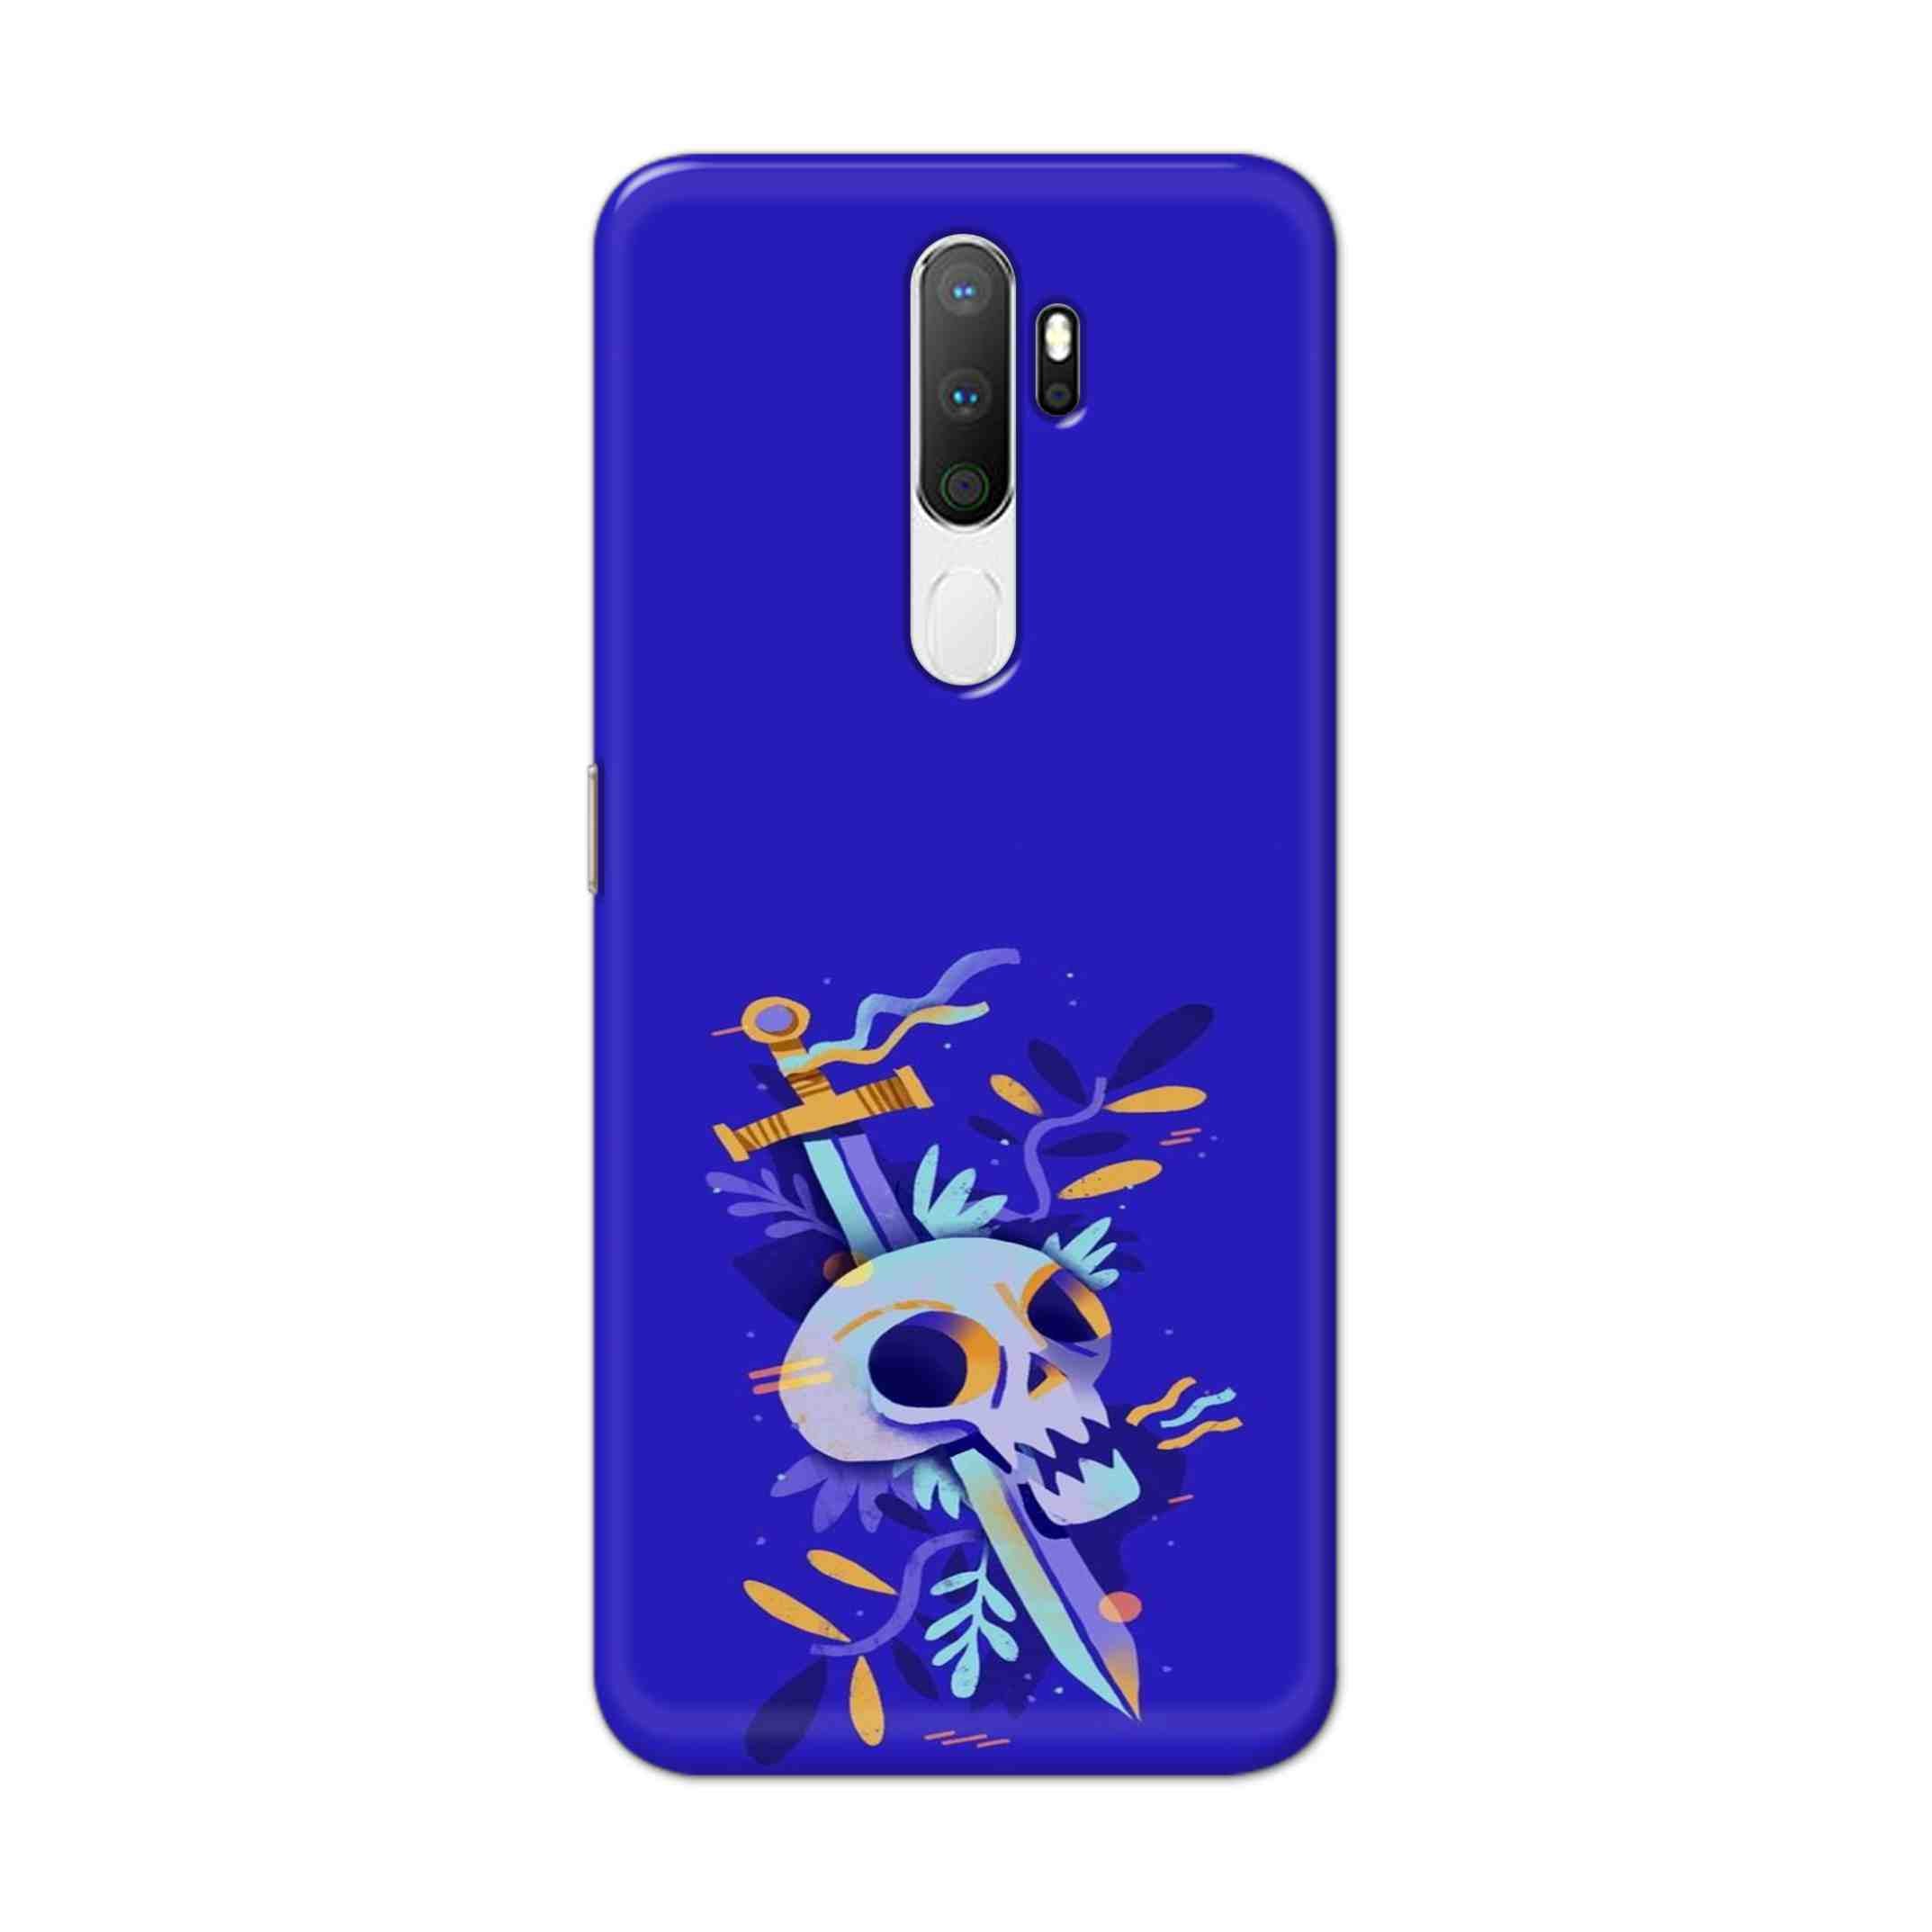 Buy Blue Skull Hard Back Mobile Phone Case Cover For Oppo A5 (2020) Online